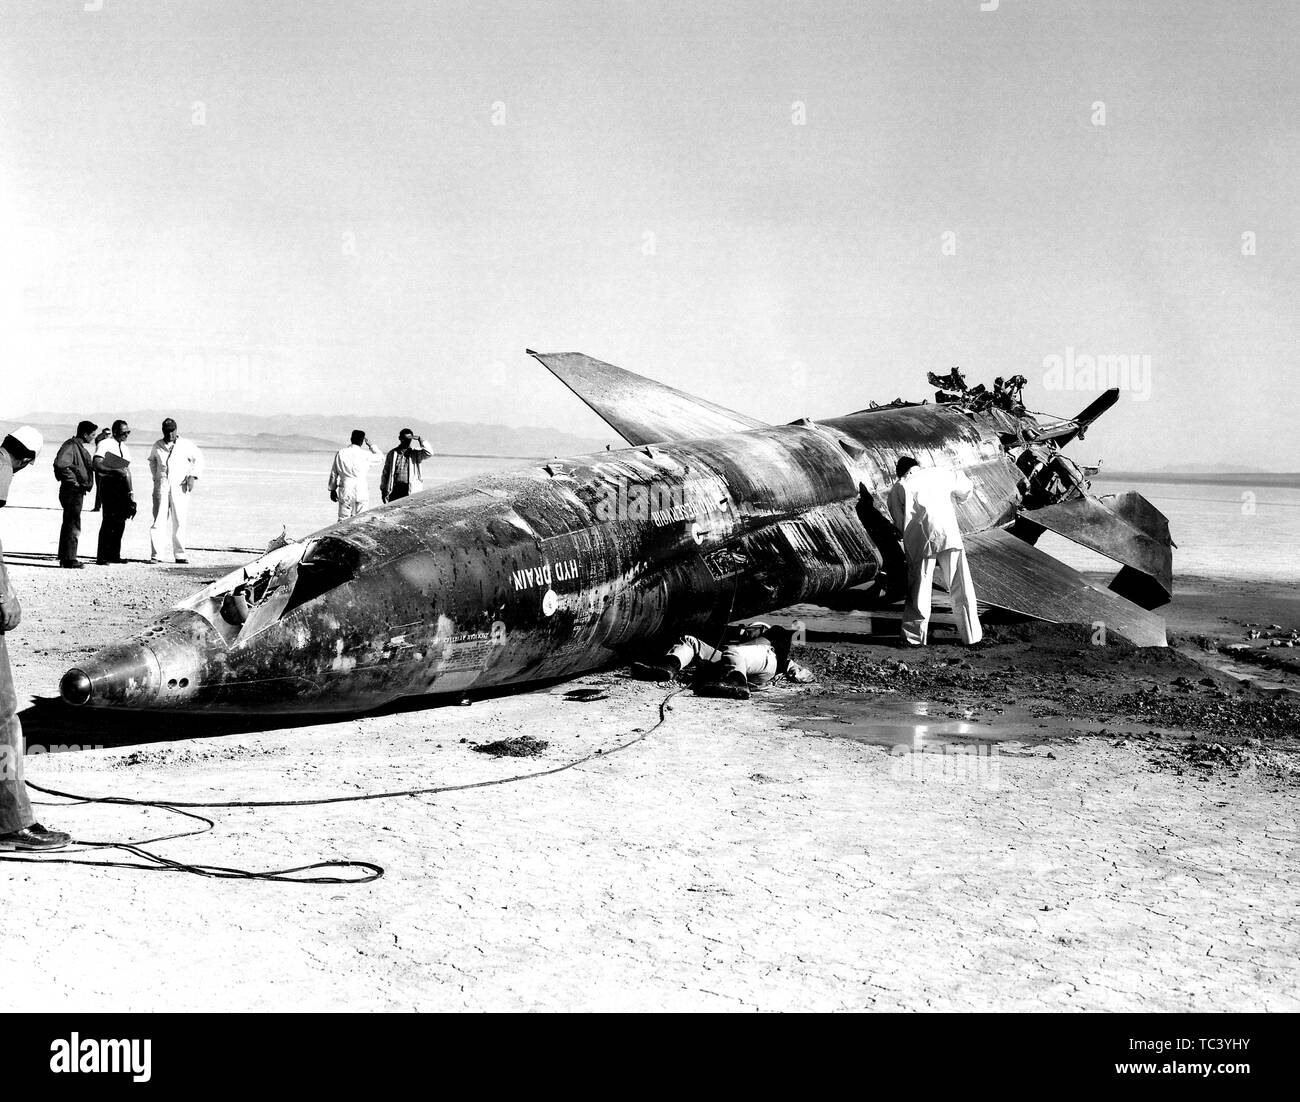 An Air Force team gathers around an X-15 rocket-powered aircraft crash at Mud Lake, Nevada, November 9, 1962. Image courtesy National Aeronautics and Space Administration (NASA). () Stock Photo